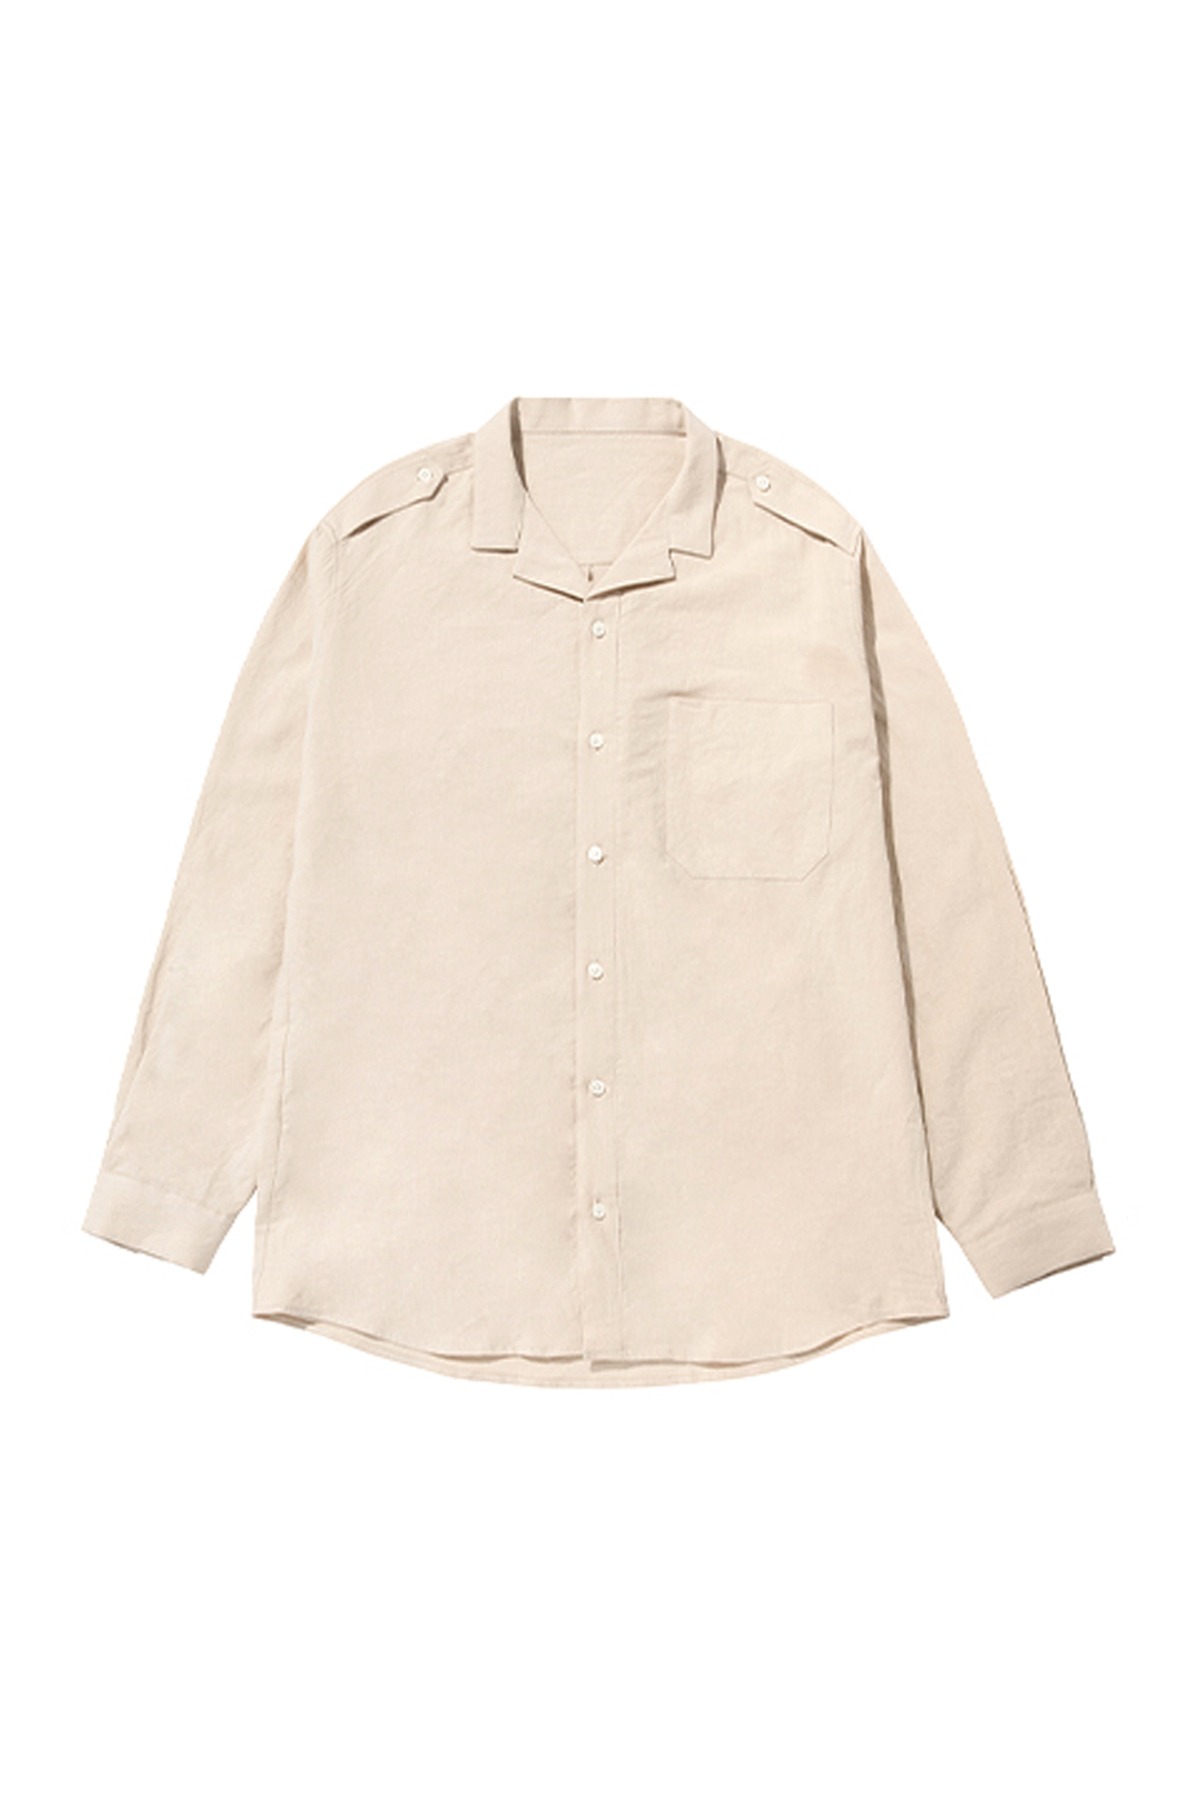 #jp39 Nakama open collar shirt (beige)